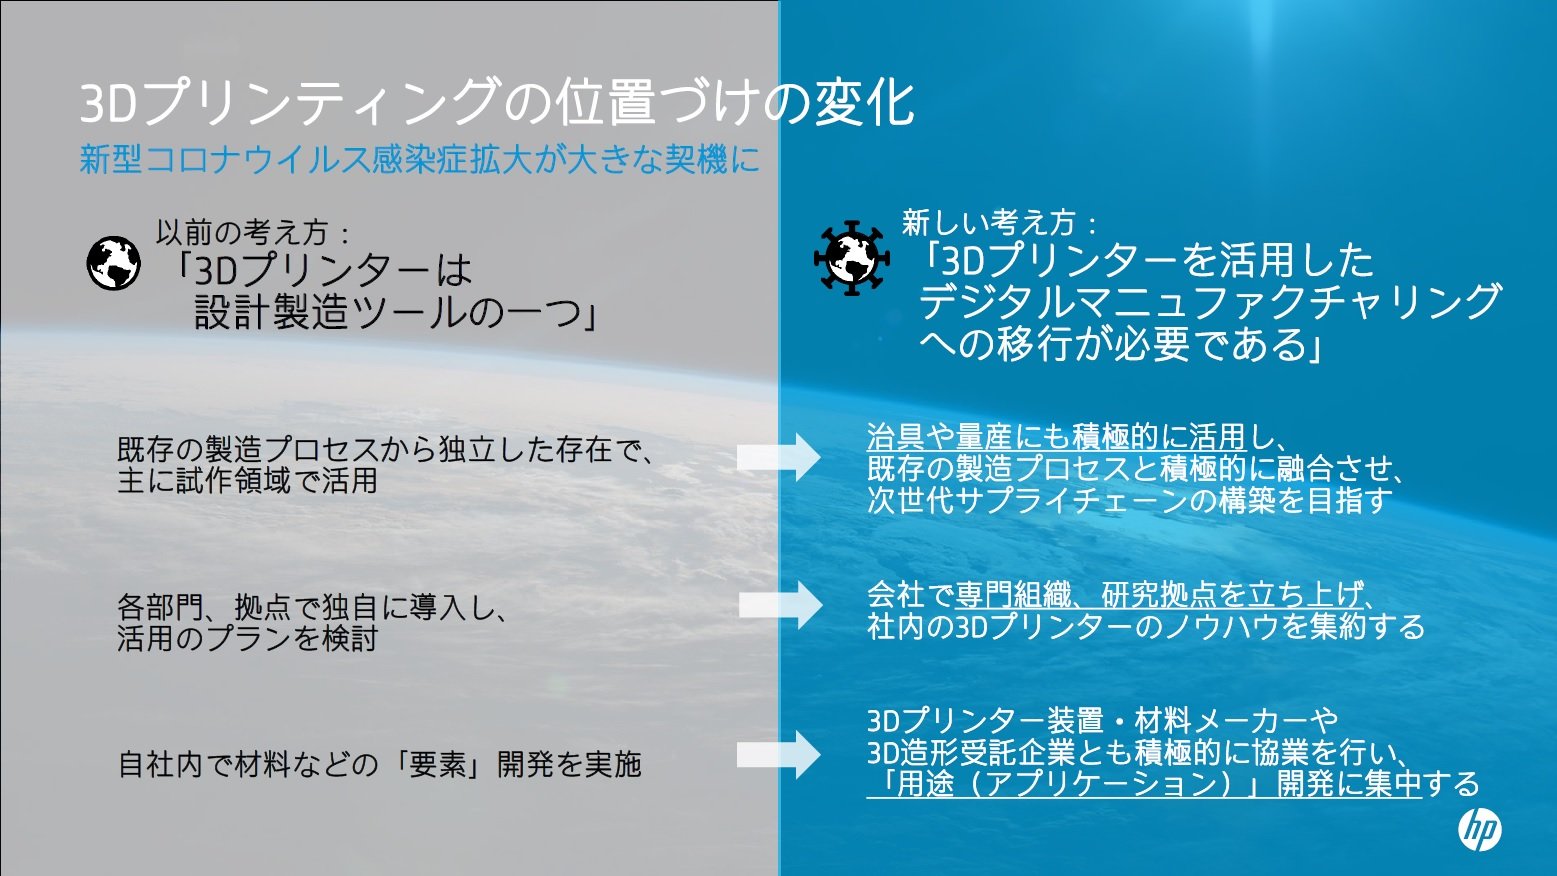 脅威を機会に、コロナ禍で高まる3Dプリンタ活用への期待に応える日本HP